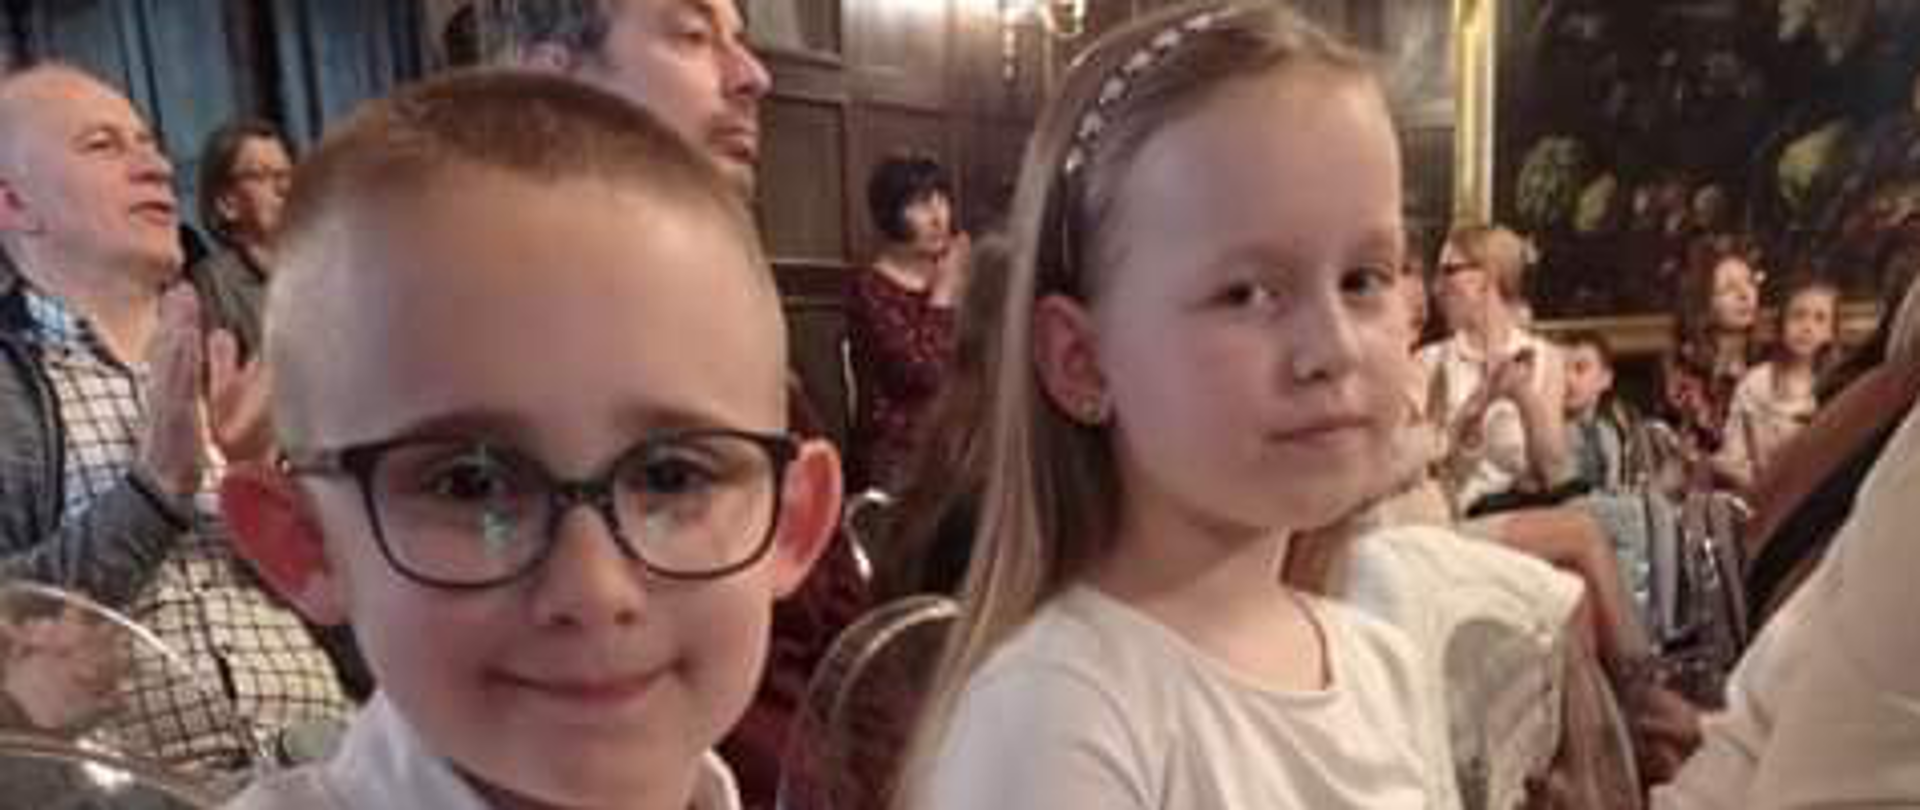 Dziewczynka i chłopiec w okularach ubrani na biało.Za nimi inni ludzie